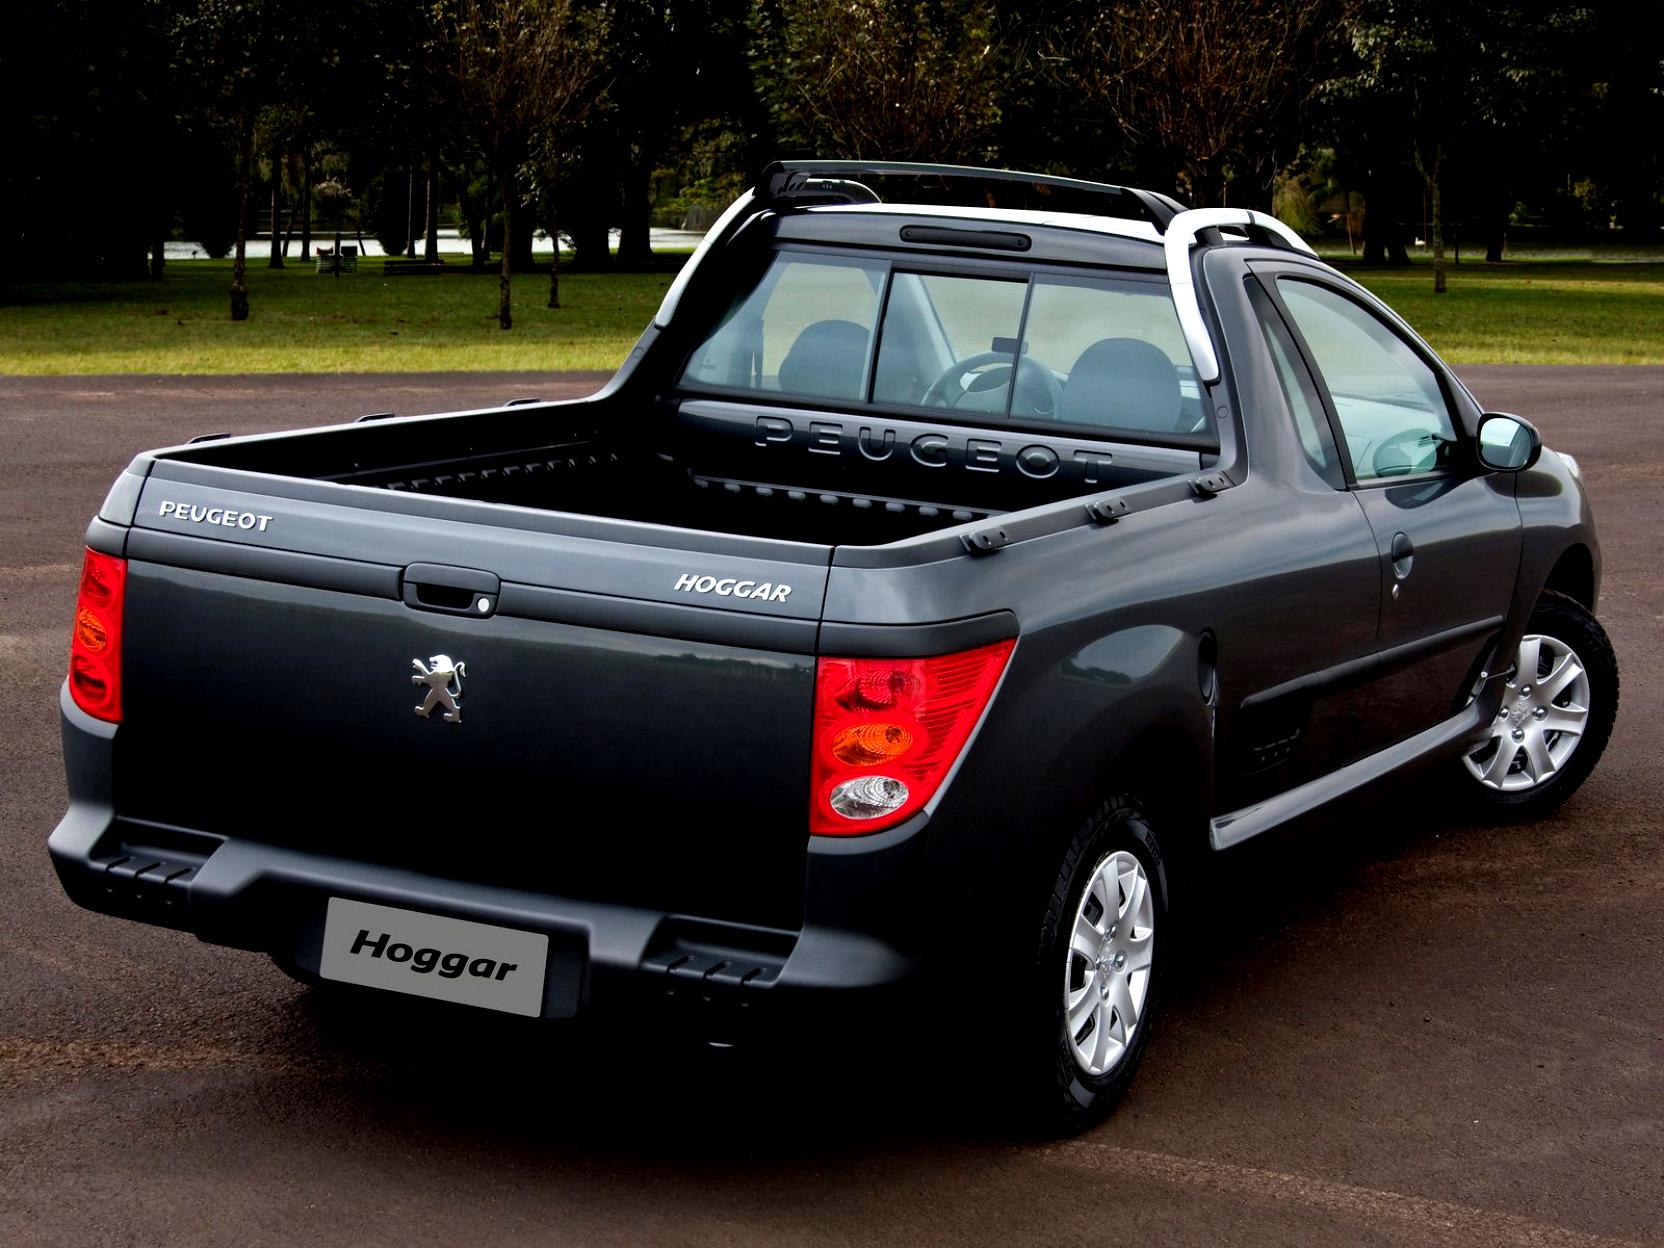 Peugeot Hoggar 2010 #5